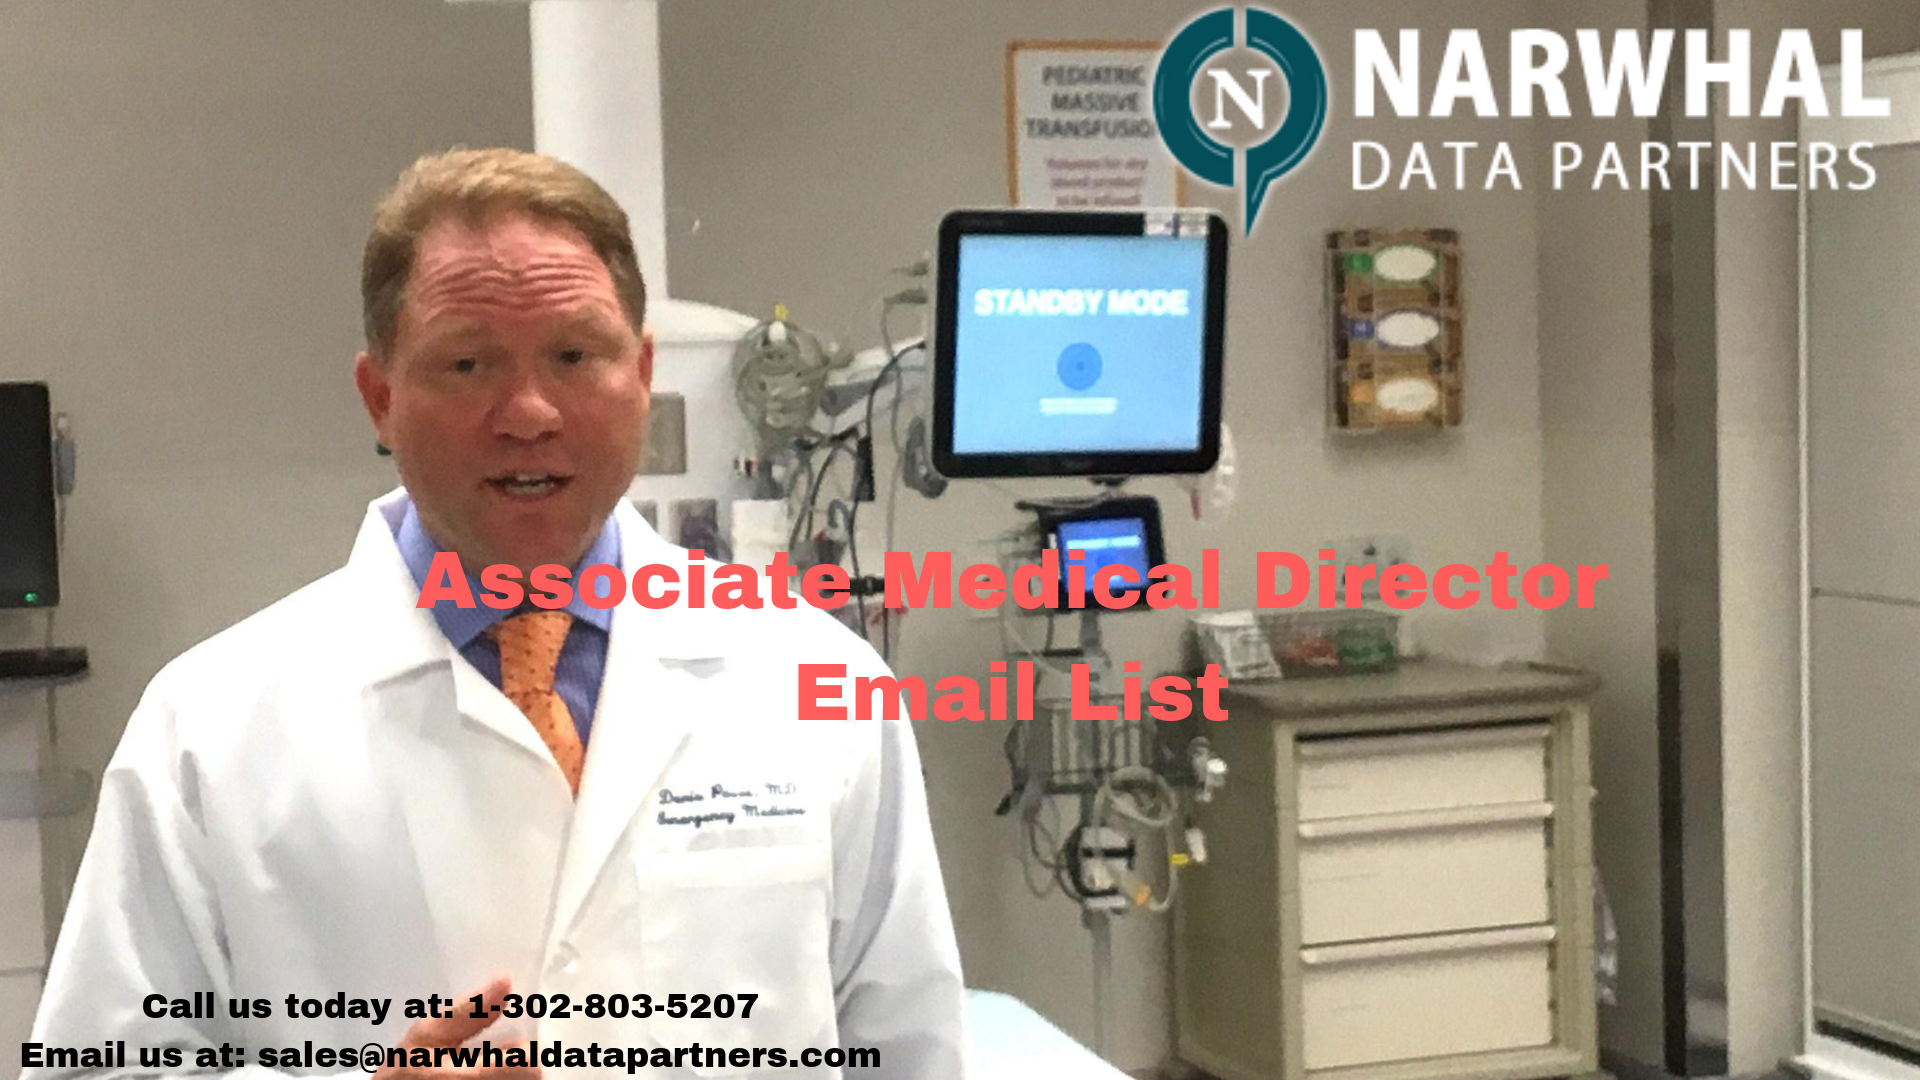 http://narwhaldatapartners.com/associate-medical-director-email-list.html